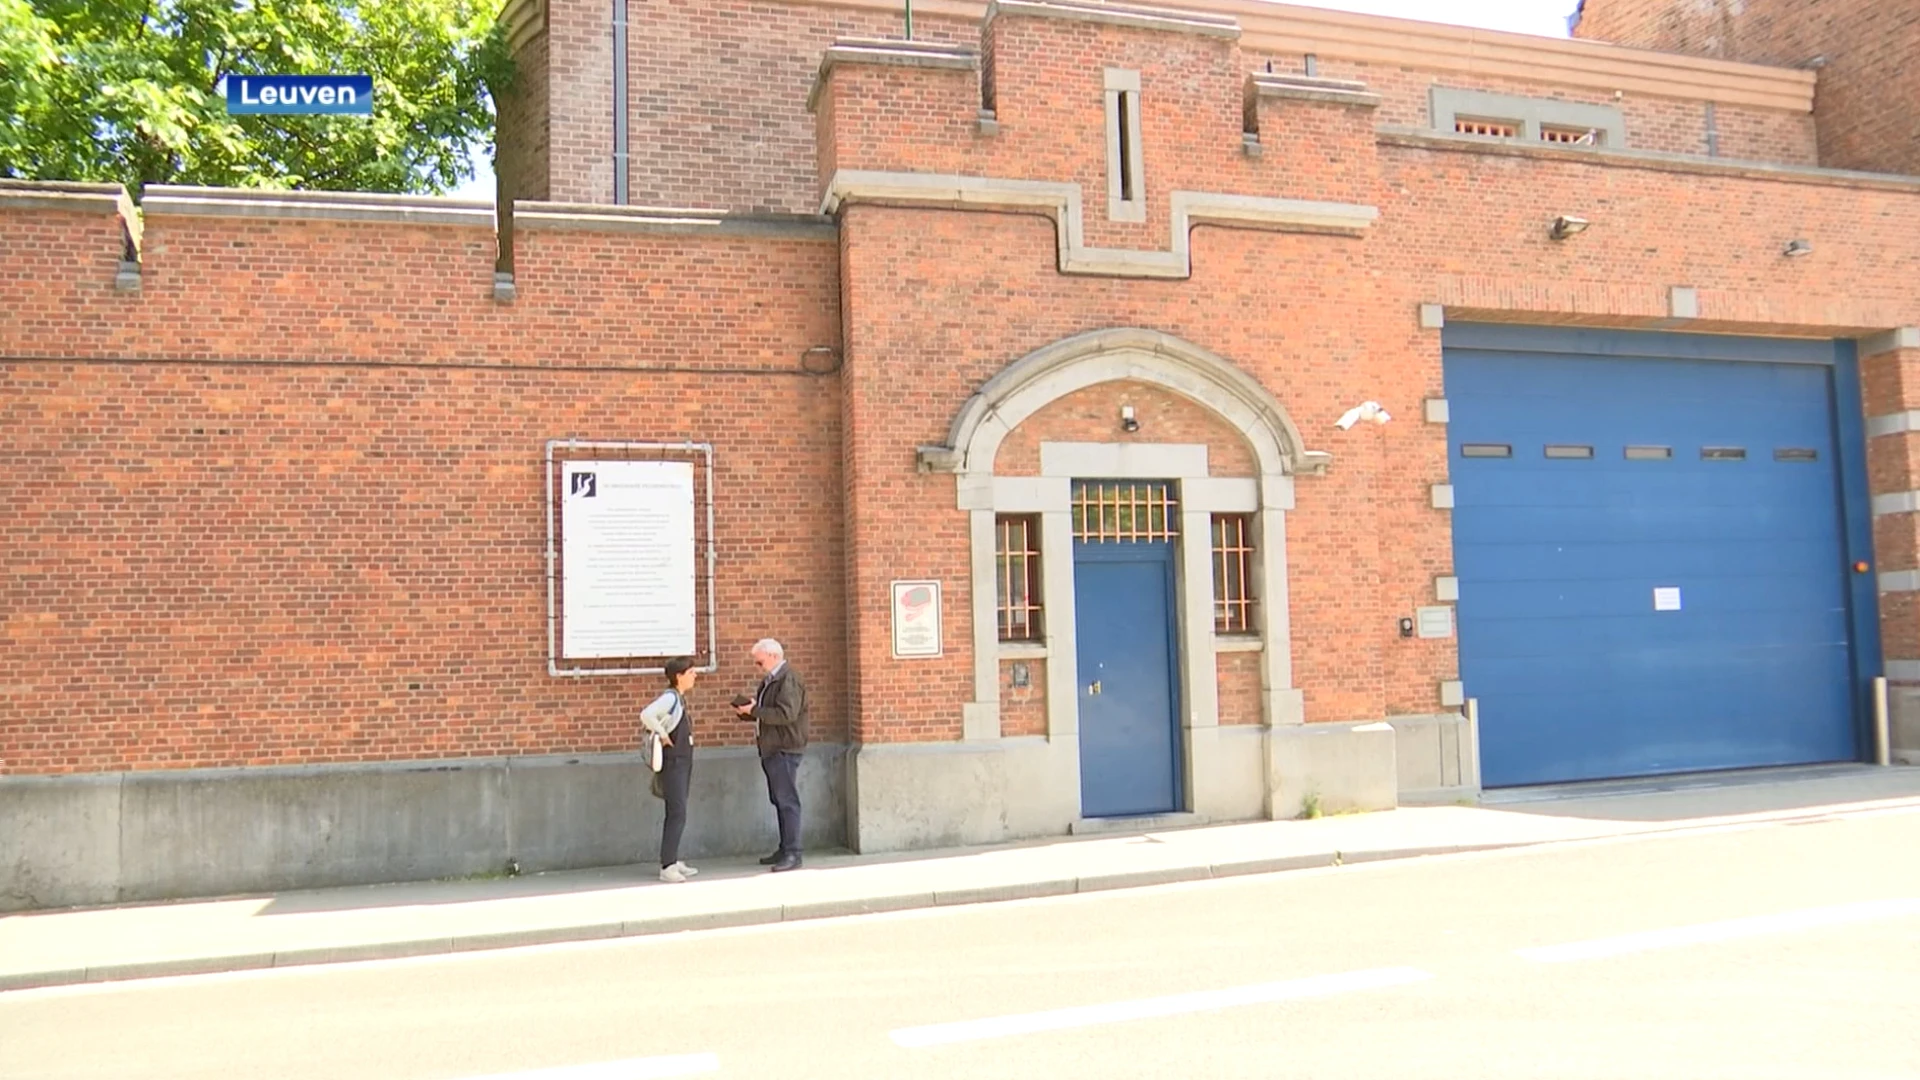 Gevangenis Leuven Hulp kampt met serieuze overbevolking